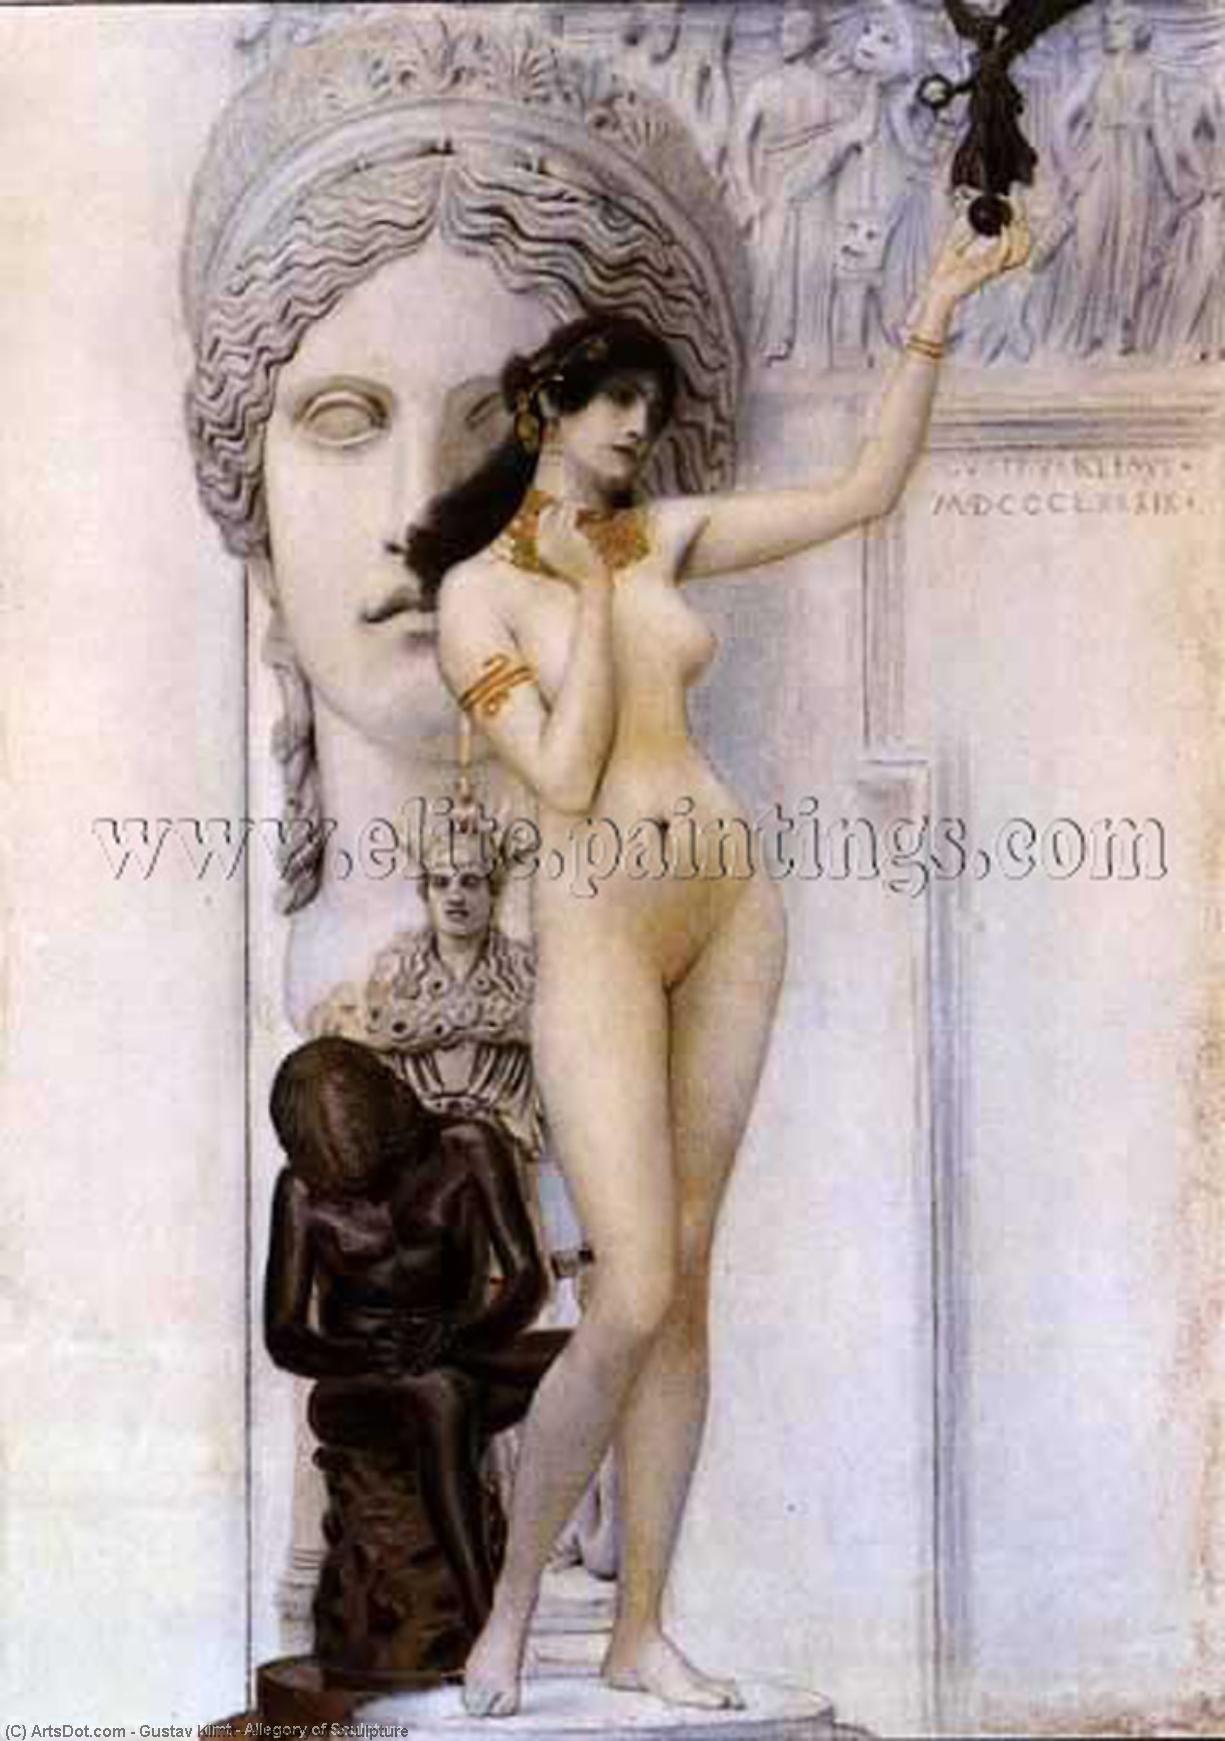 WikiOO.org - אנציקלופדיה לאמנויות יפות - ציור, יצירות אמנות Gustav Klimt - Allegory of Sculpture